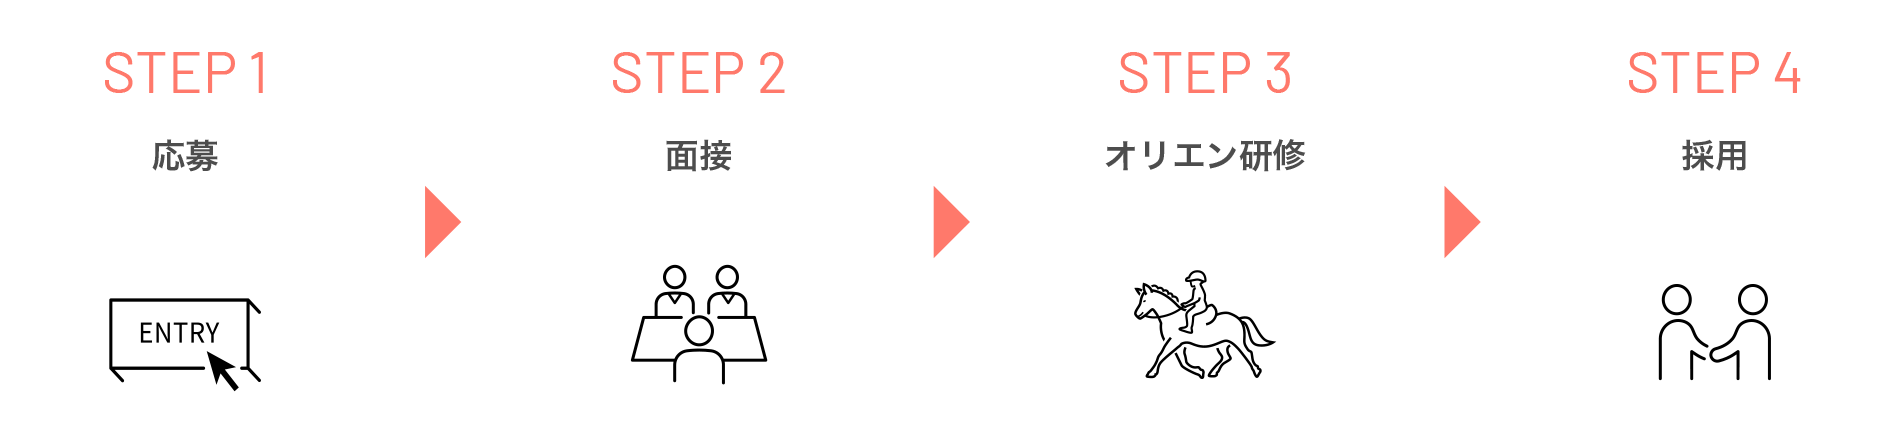 選考プロセス：STEP1応募→STEP2面接→STEP3オリエン研修→STEP4採用